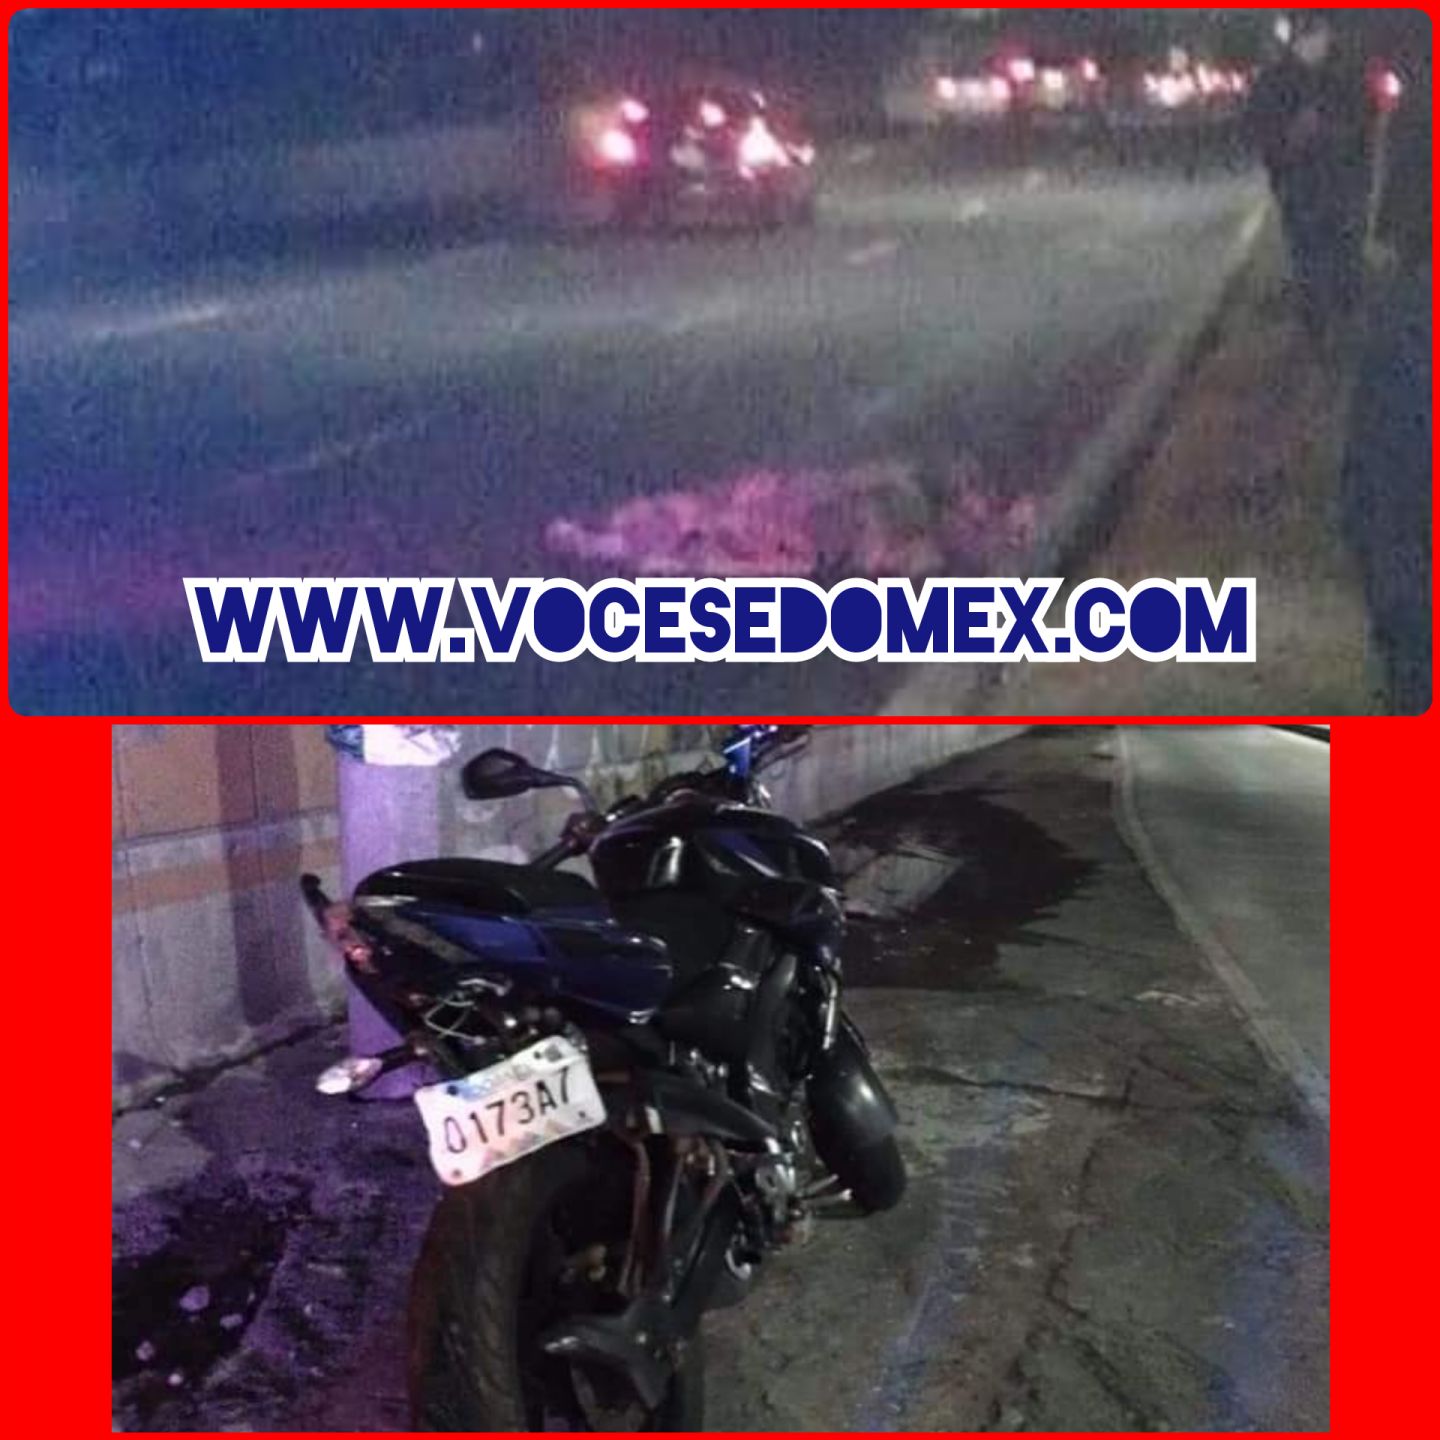 Atropellan a motociclista  y lo dejan sin vida en metro Ecatepec 